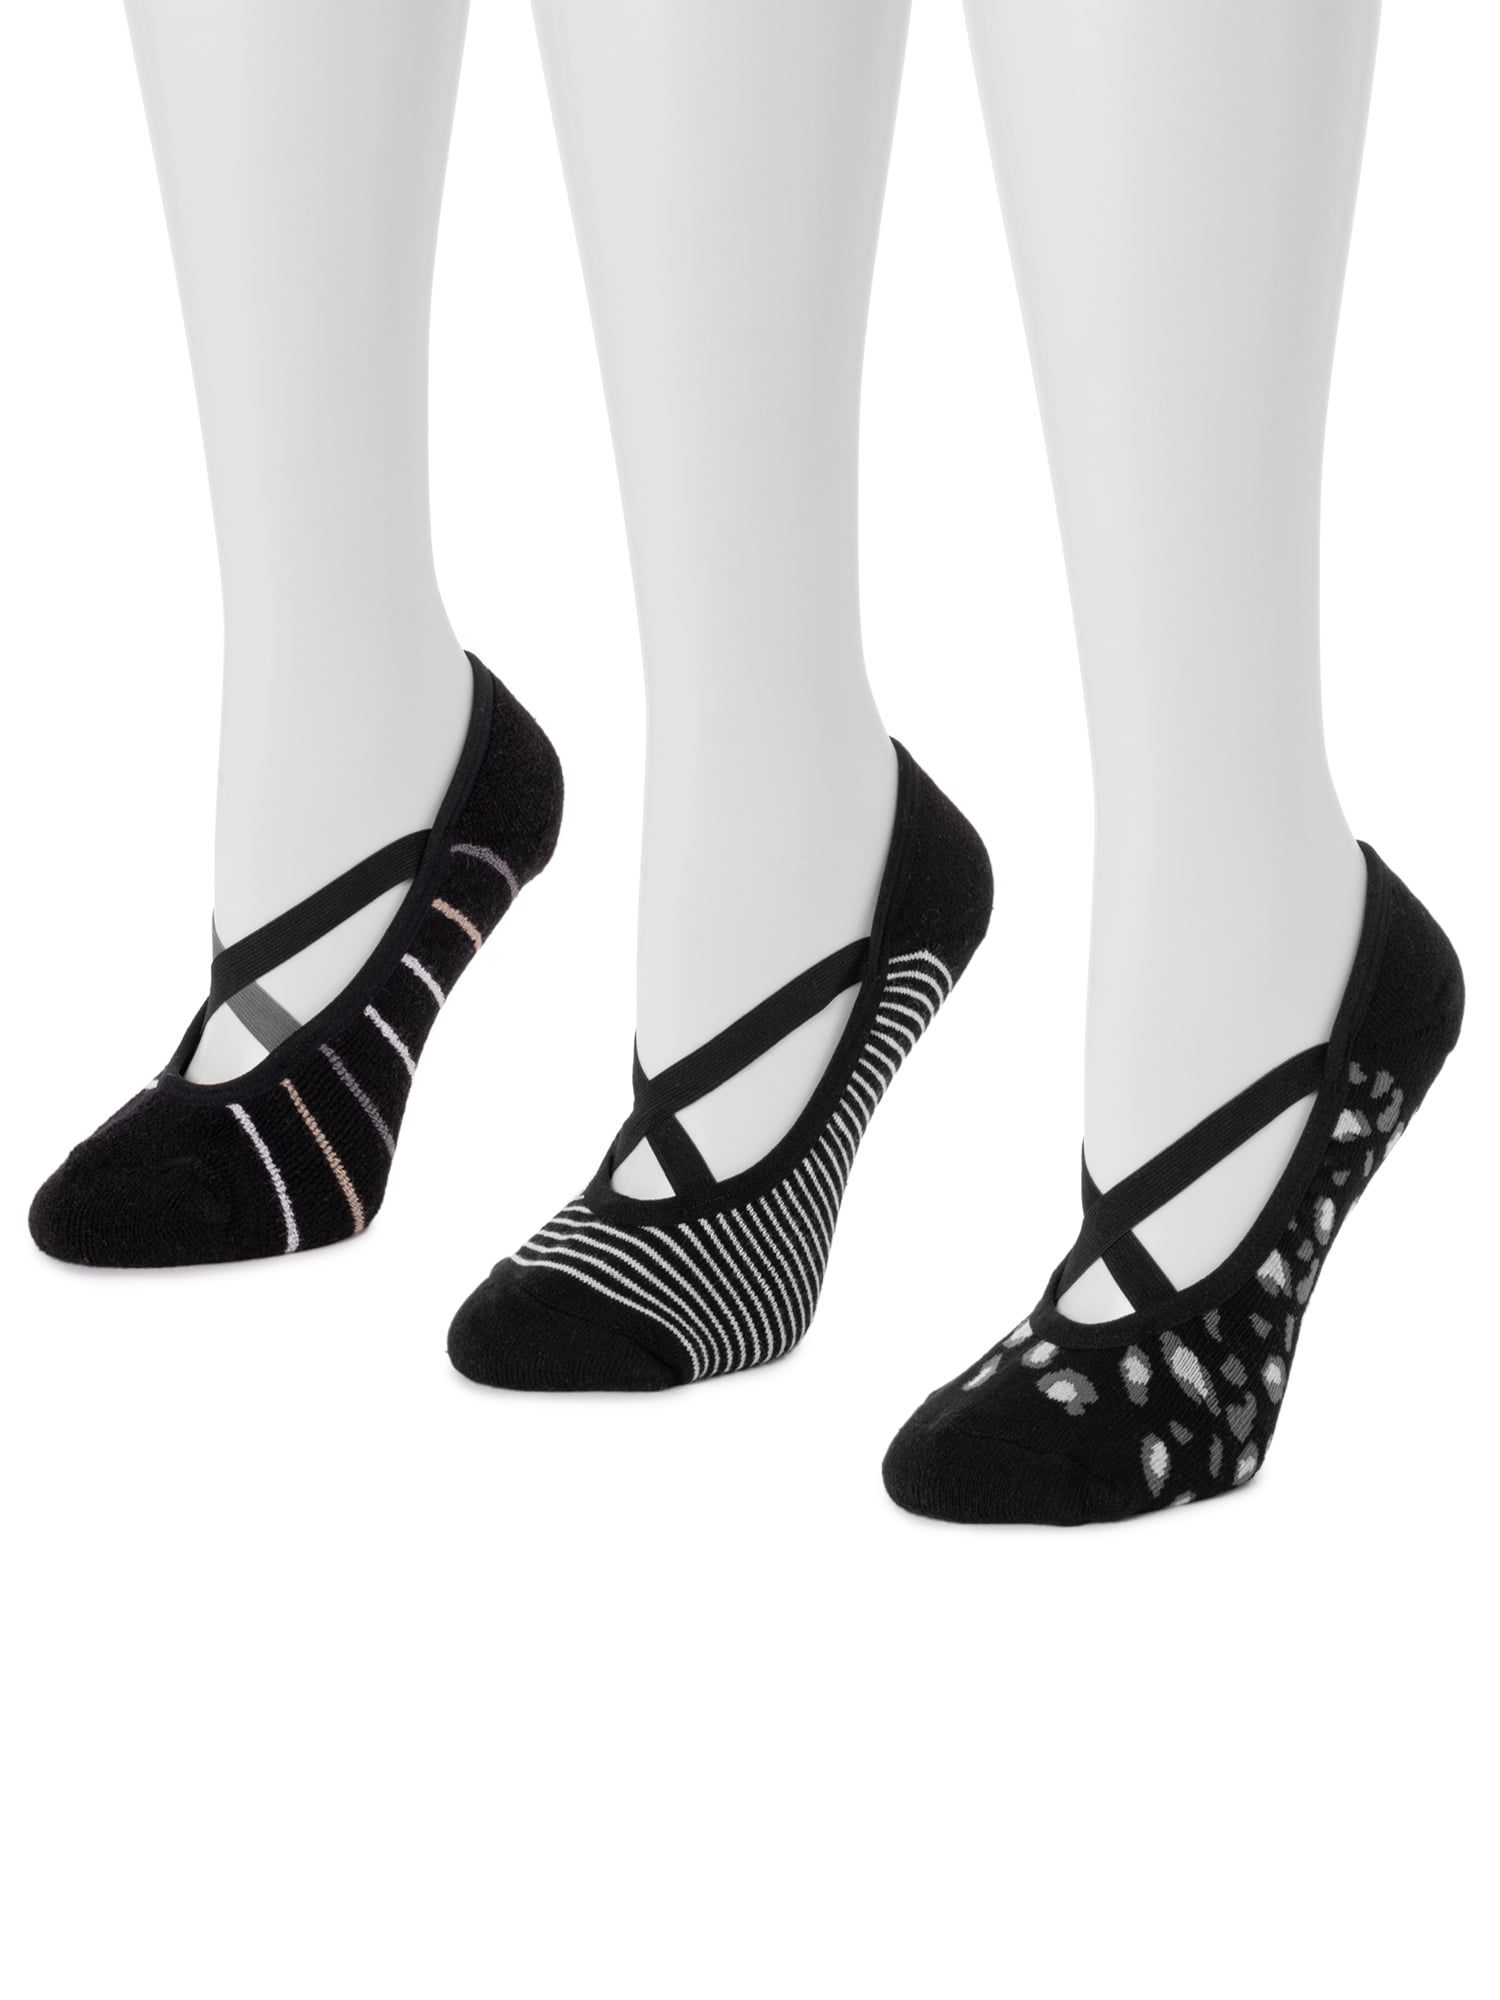 Muk Luks Women's 6 Pack Strappy Ballerina Sock - Macy's